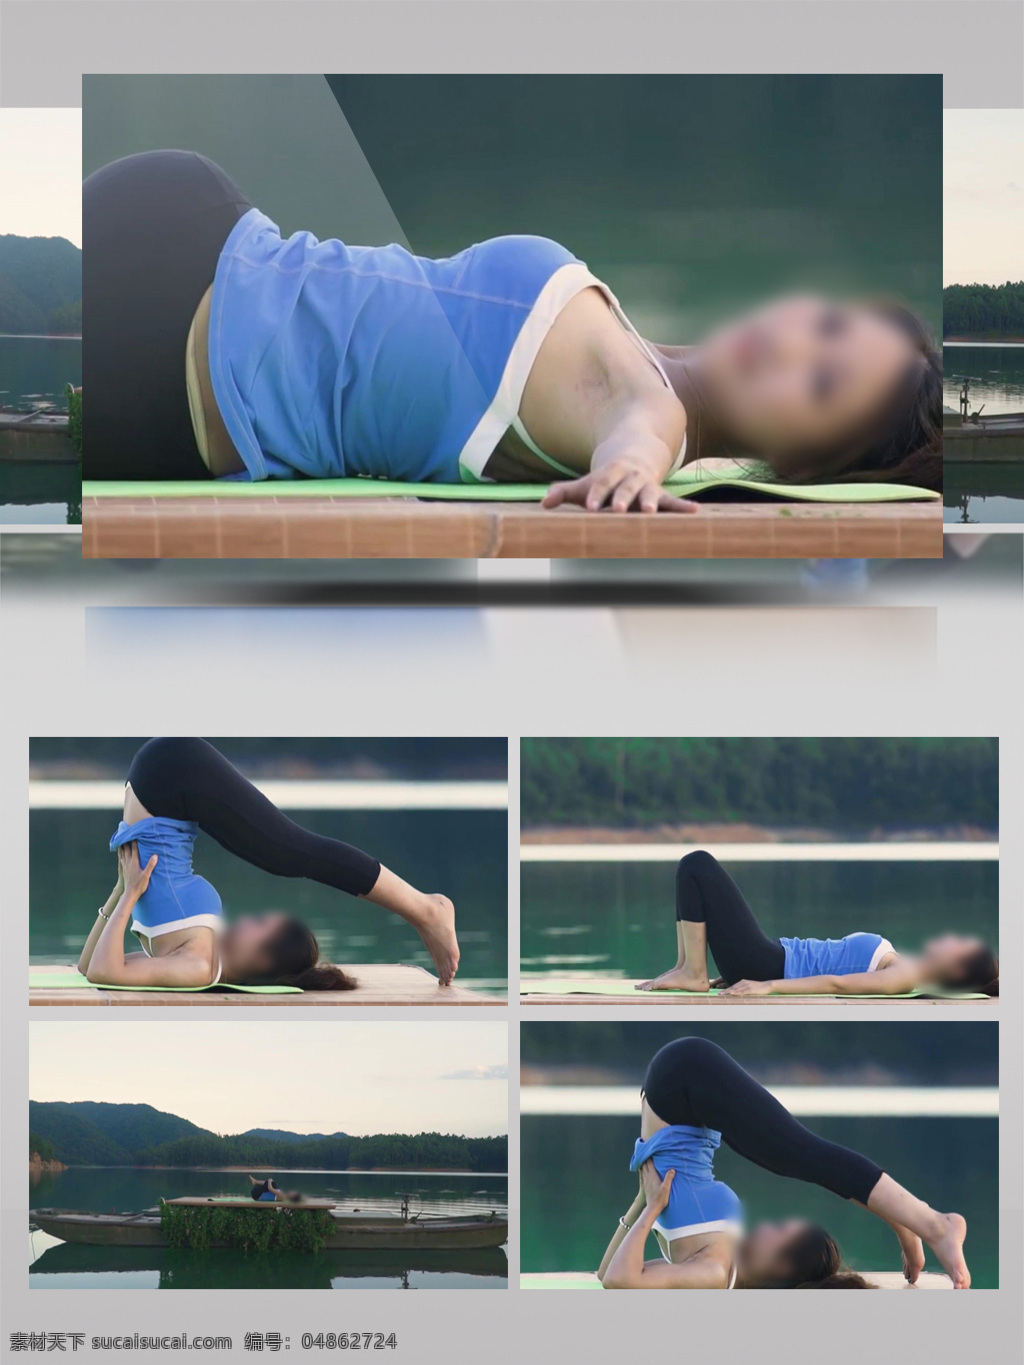 美女 教 瑜伽 视频 五 锻炼 生活 人物